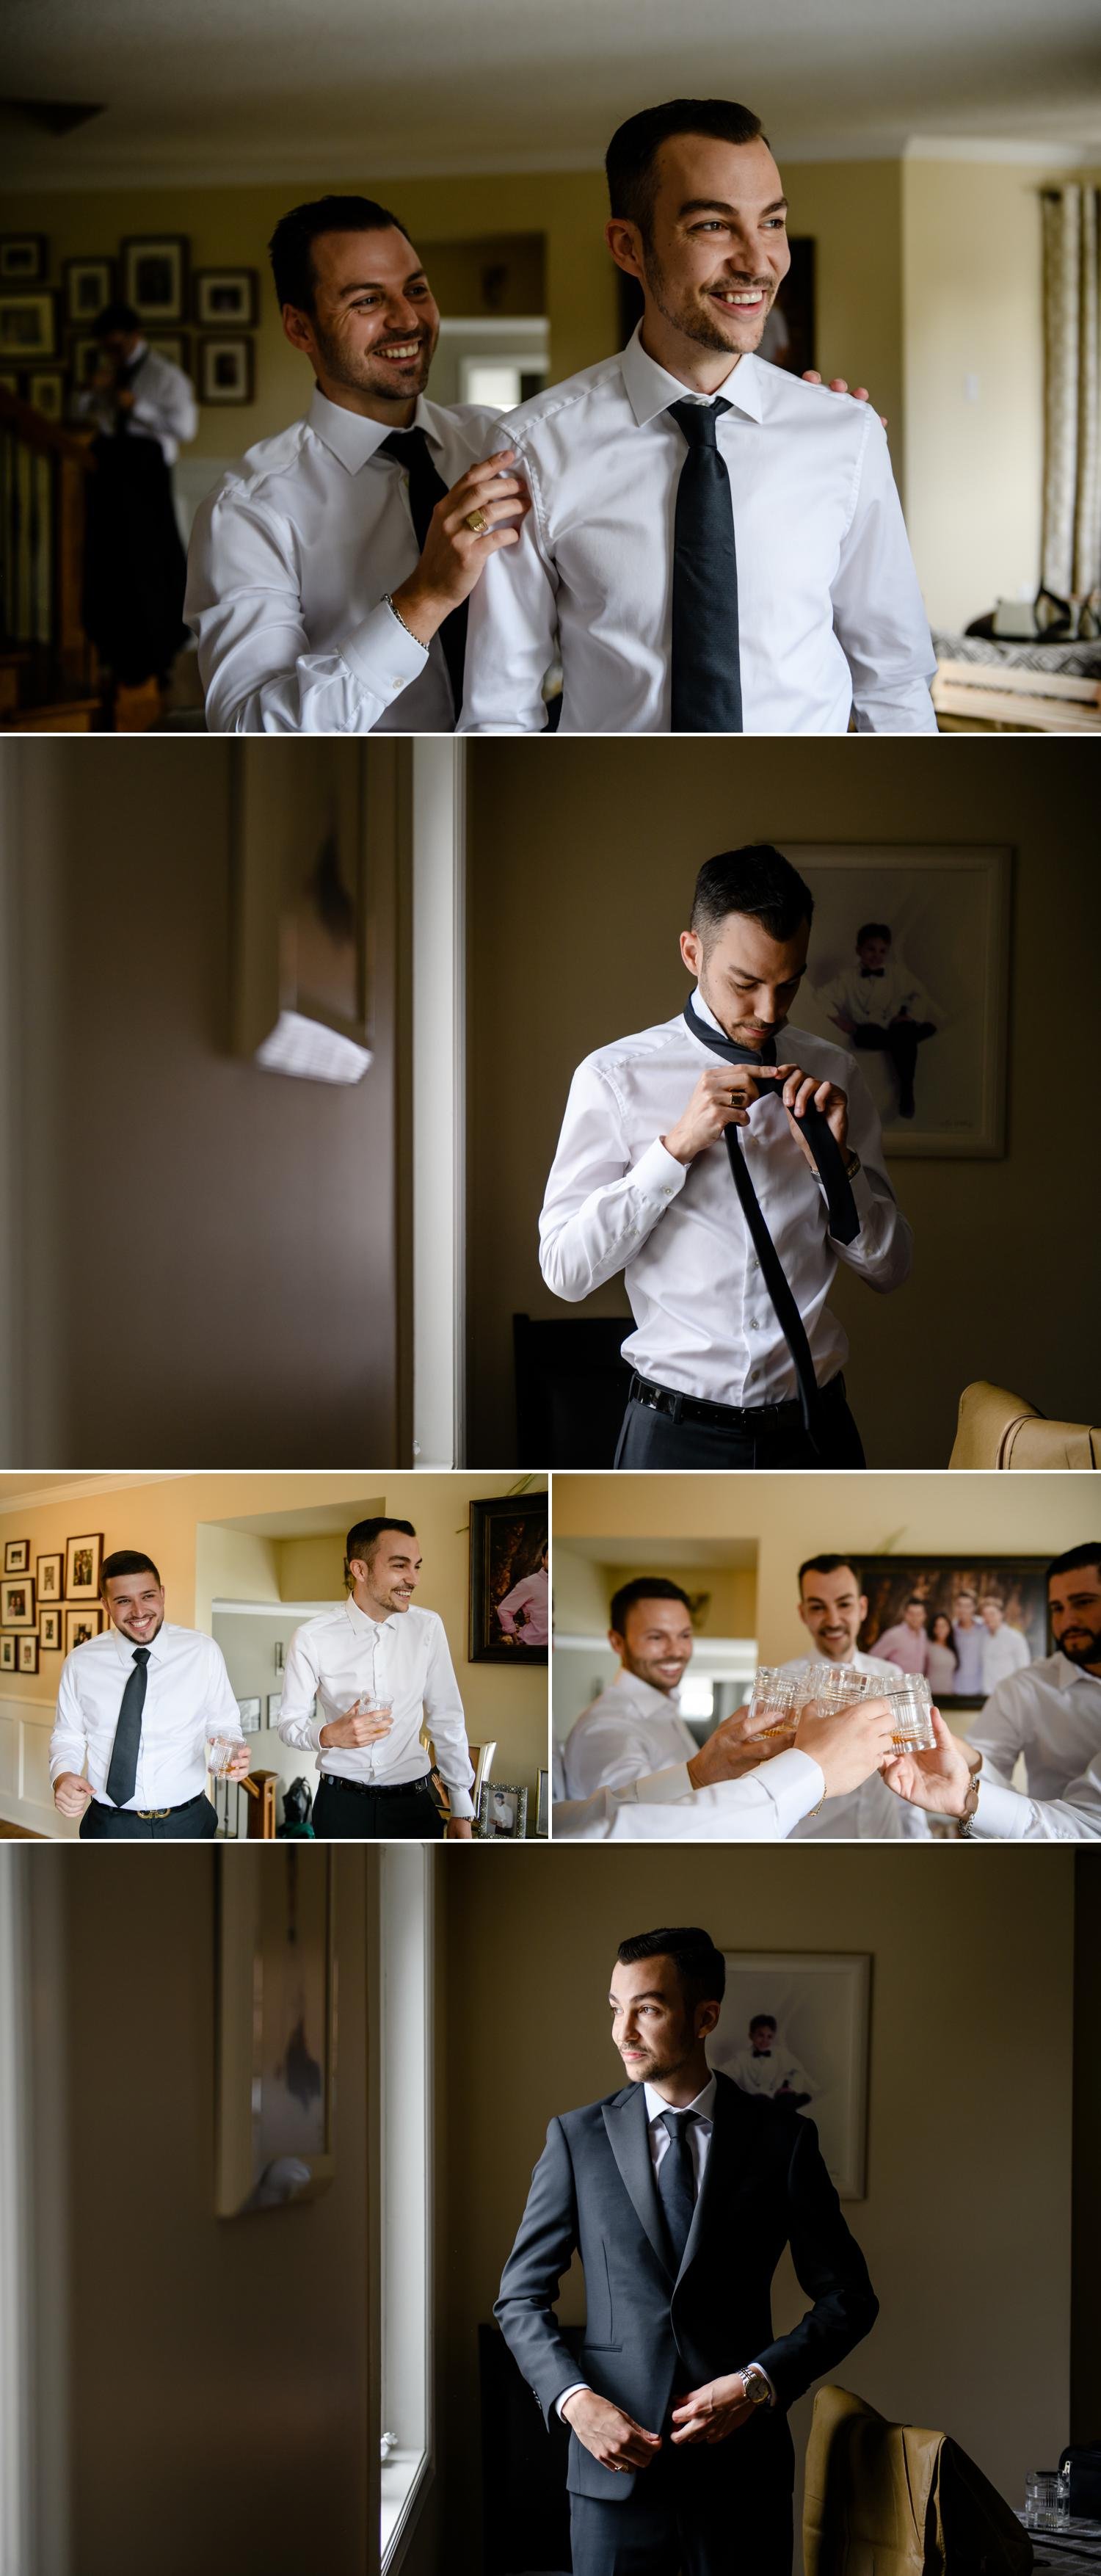 wedding photos of a groom getting ready